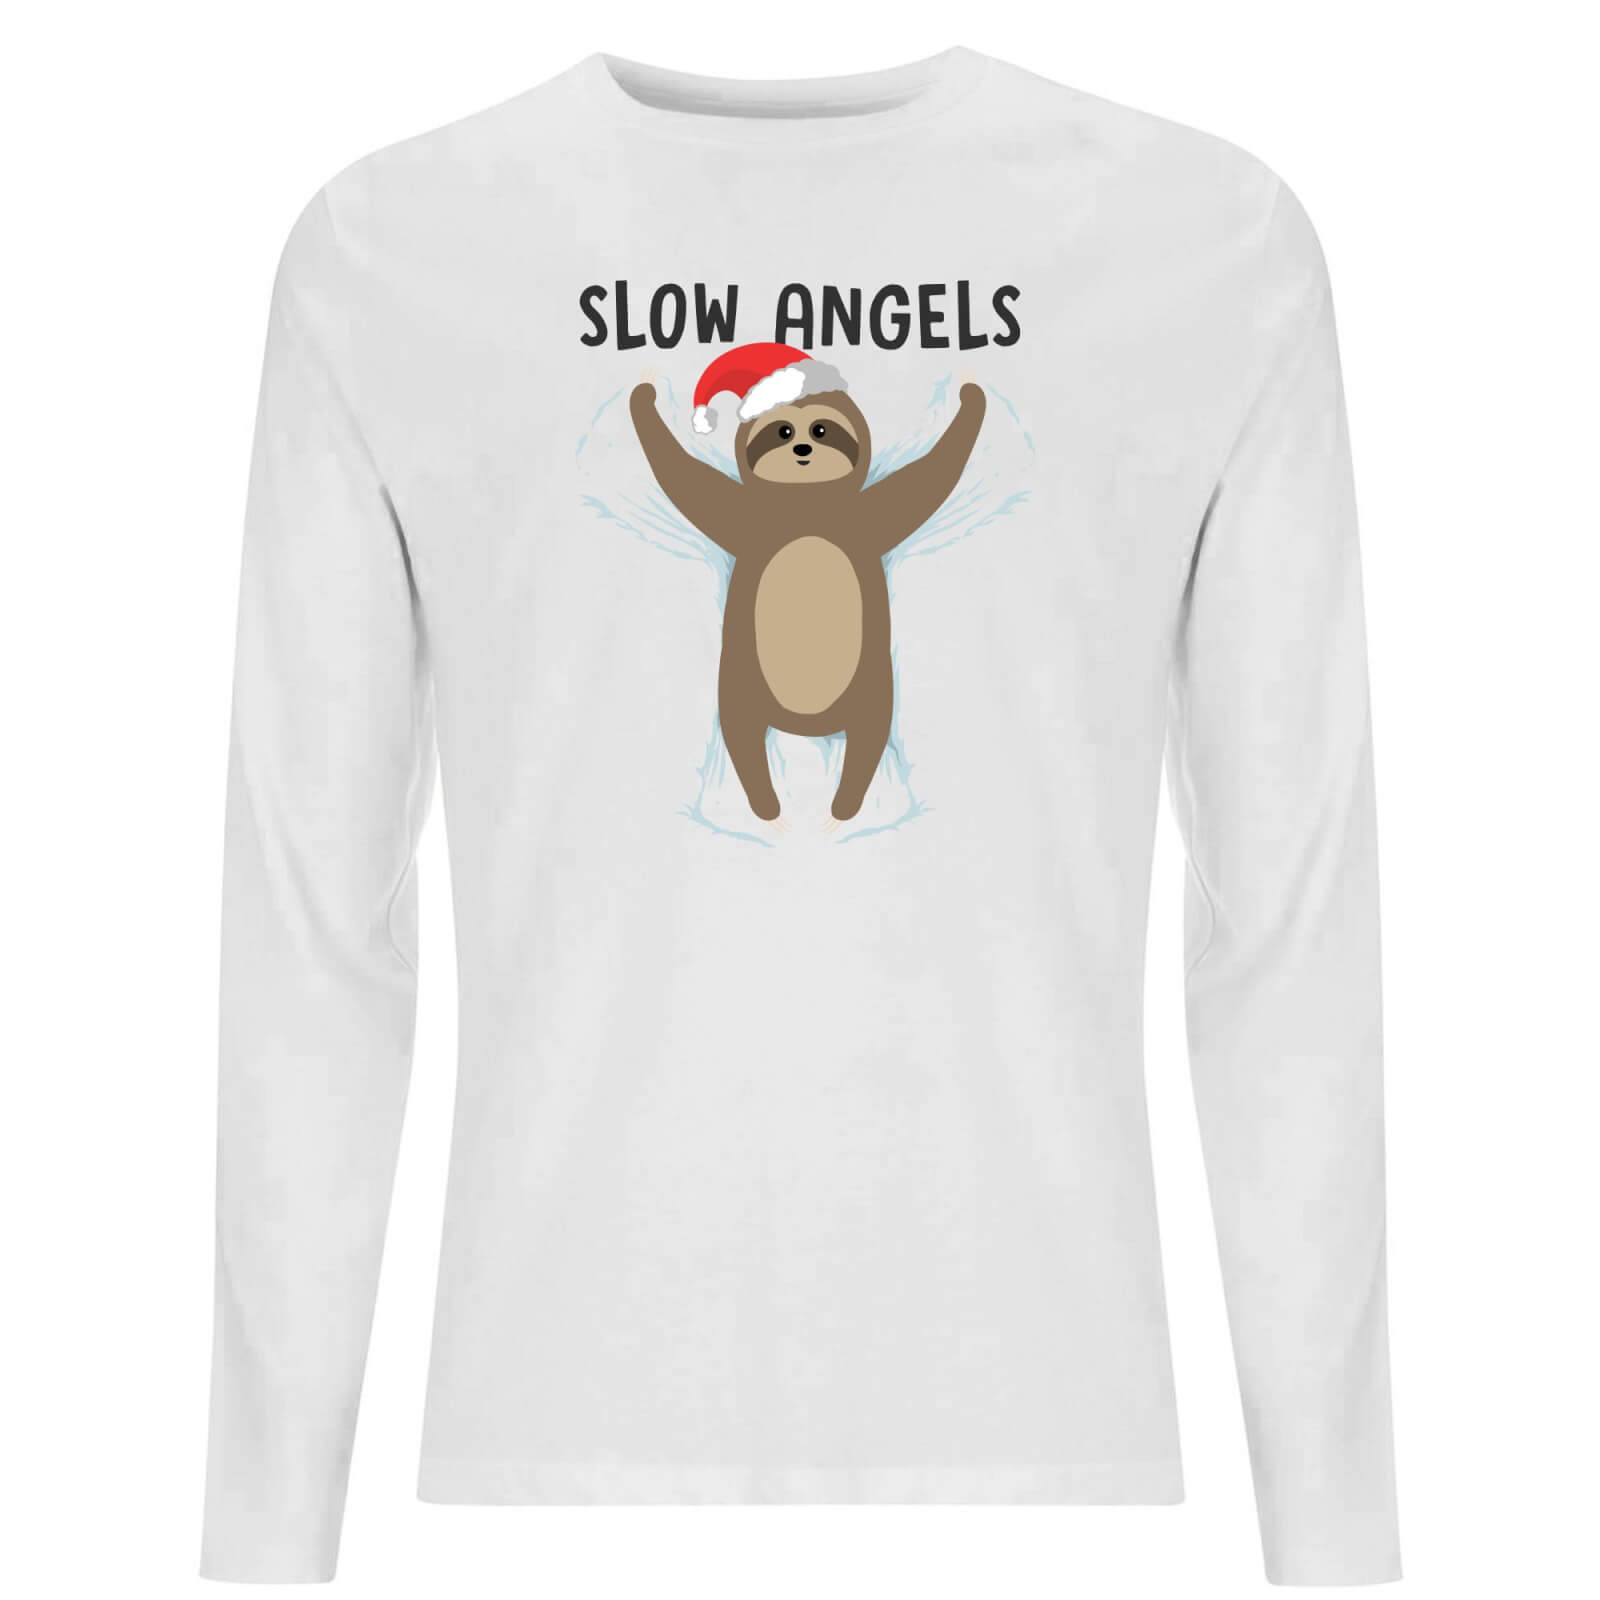 Slow Angels Unisex Long Sleeve T-Shirt - White - XS - White